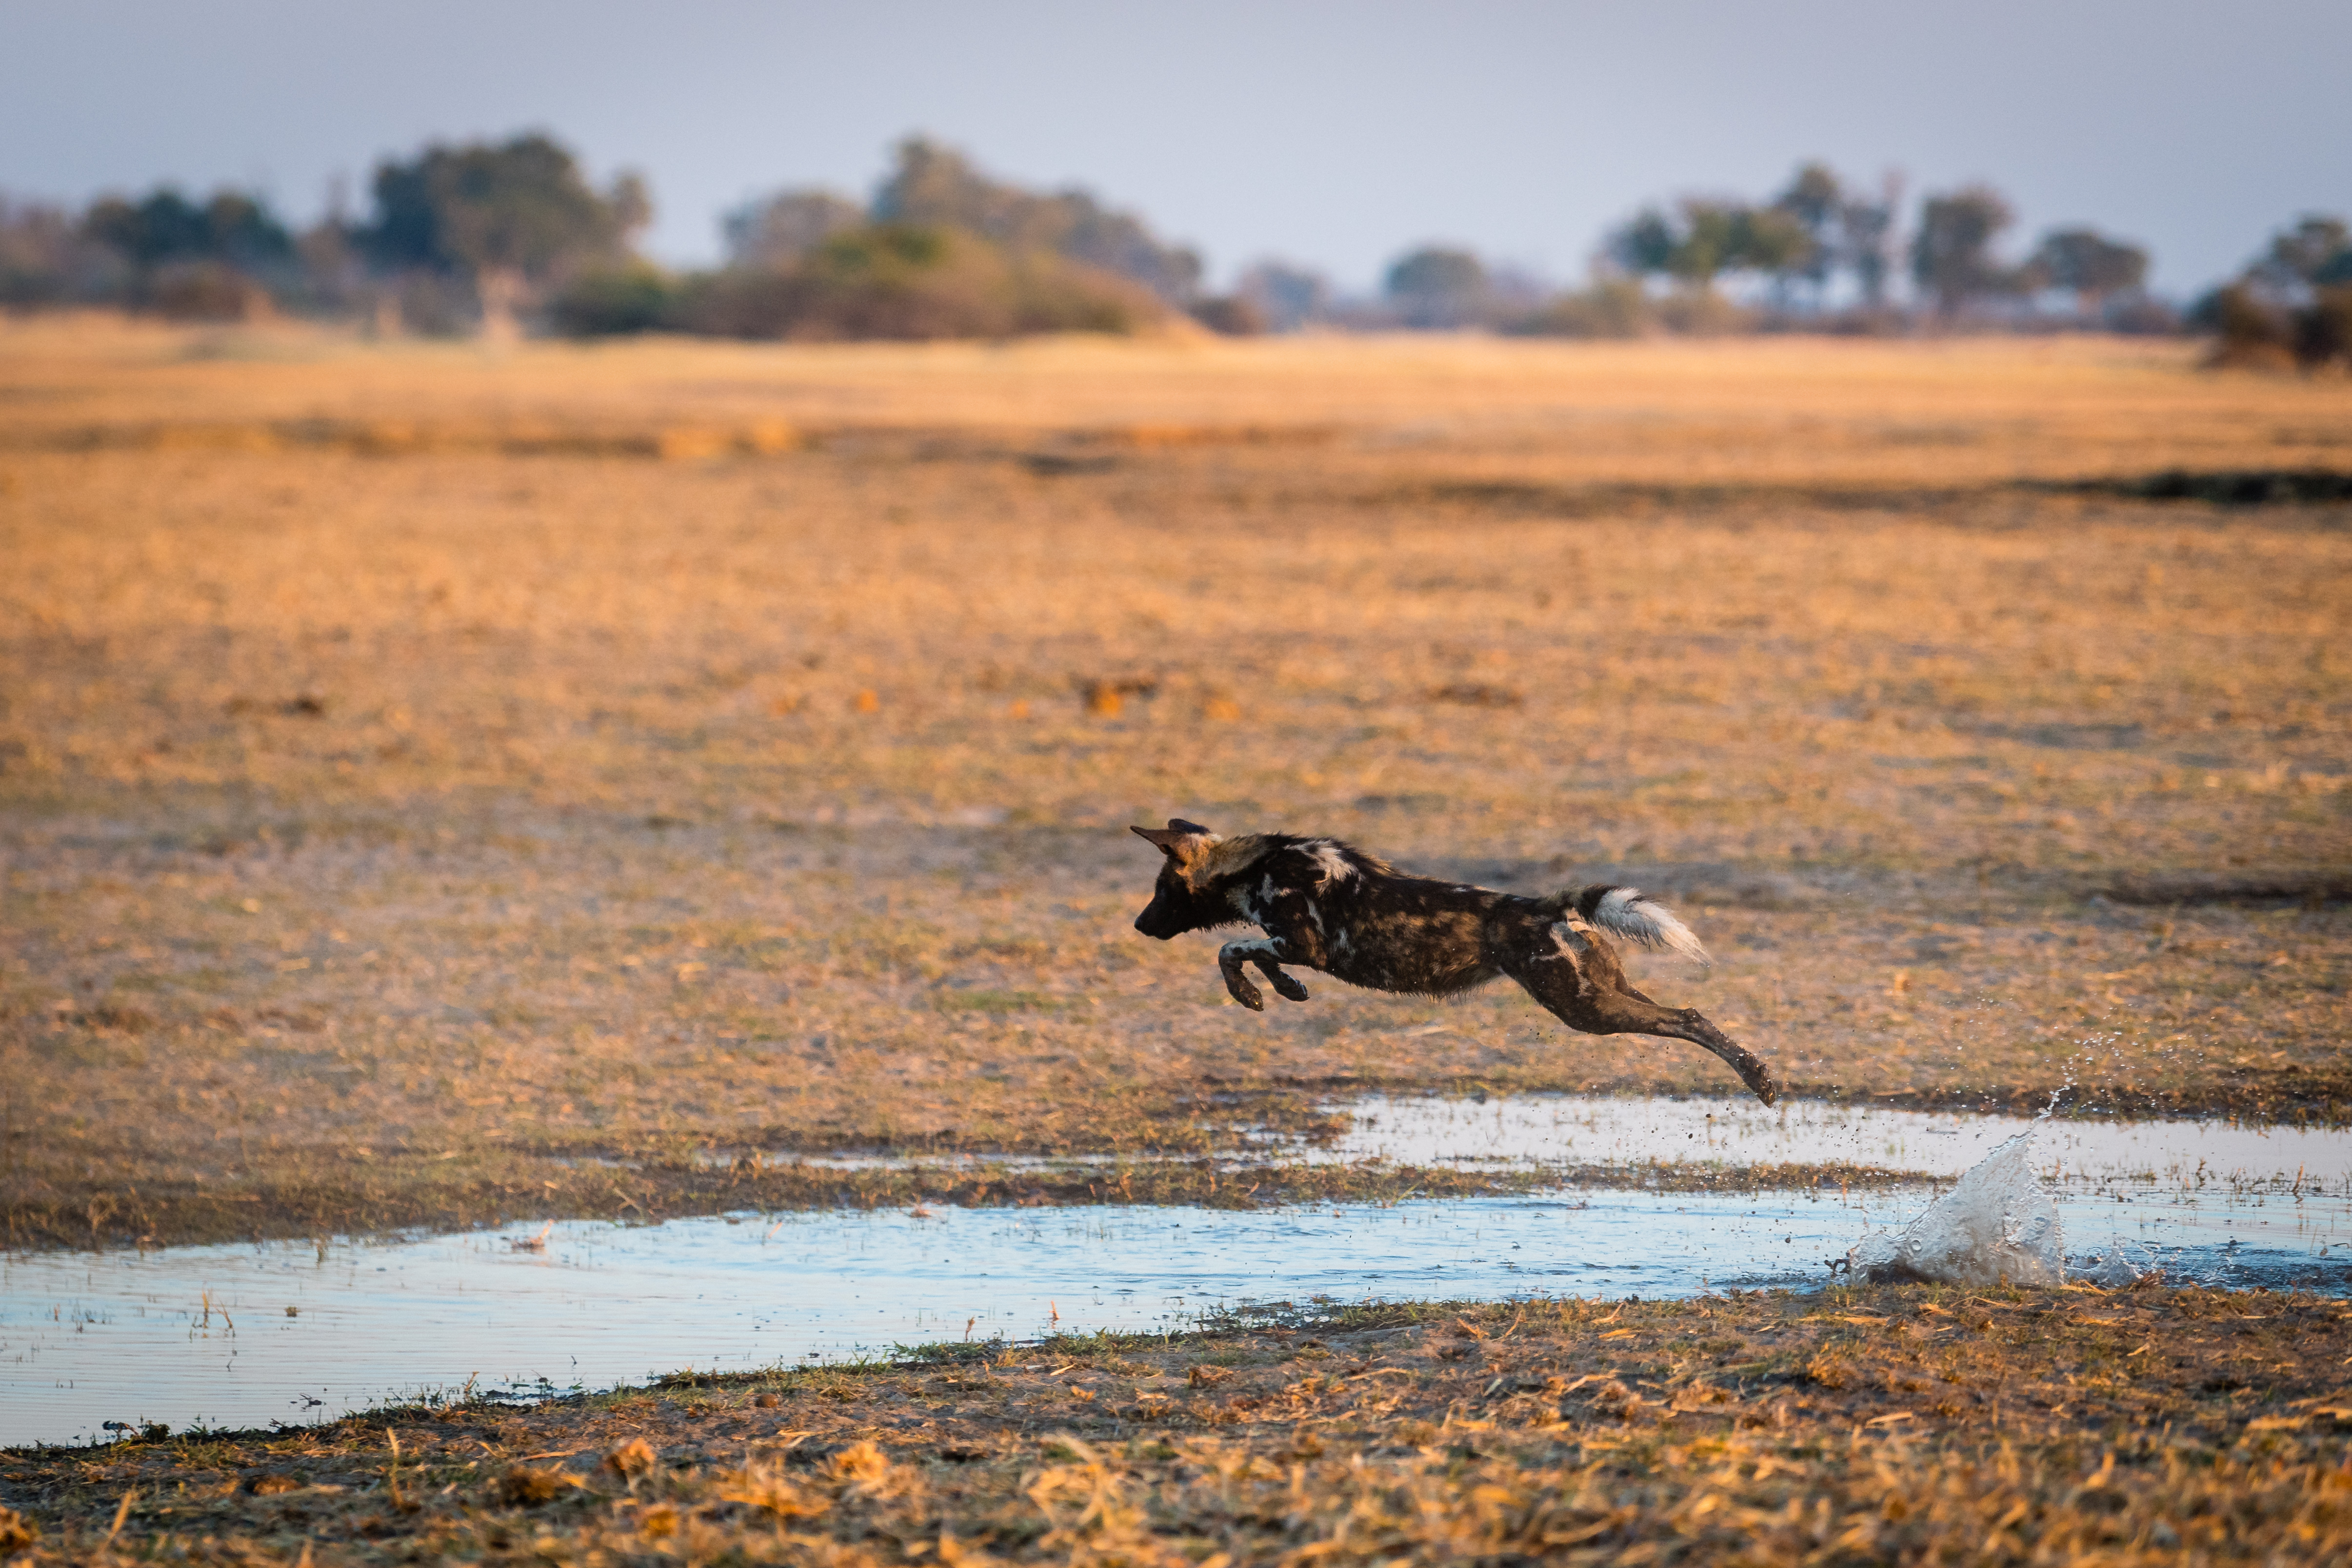 Ein Afrikanischer Wildhund überquert einen kleinen Kanal im Okavango-Delta in Botswana. Sümpfe, Flüsse und Seen dagegen stellen meist kaum überwindbare Hindernisse dar. (Bild: Dominik Behr)